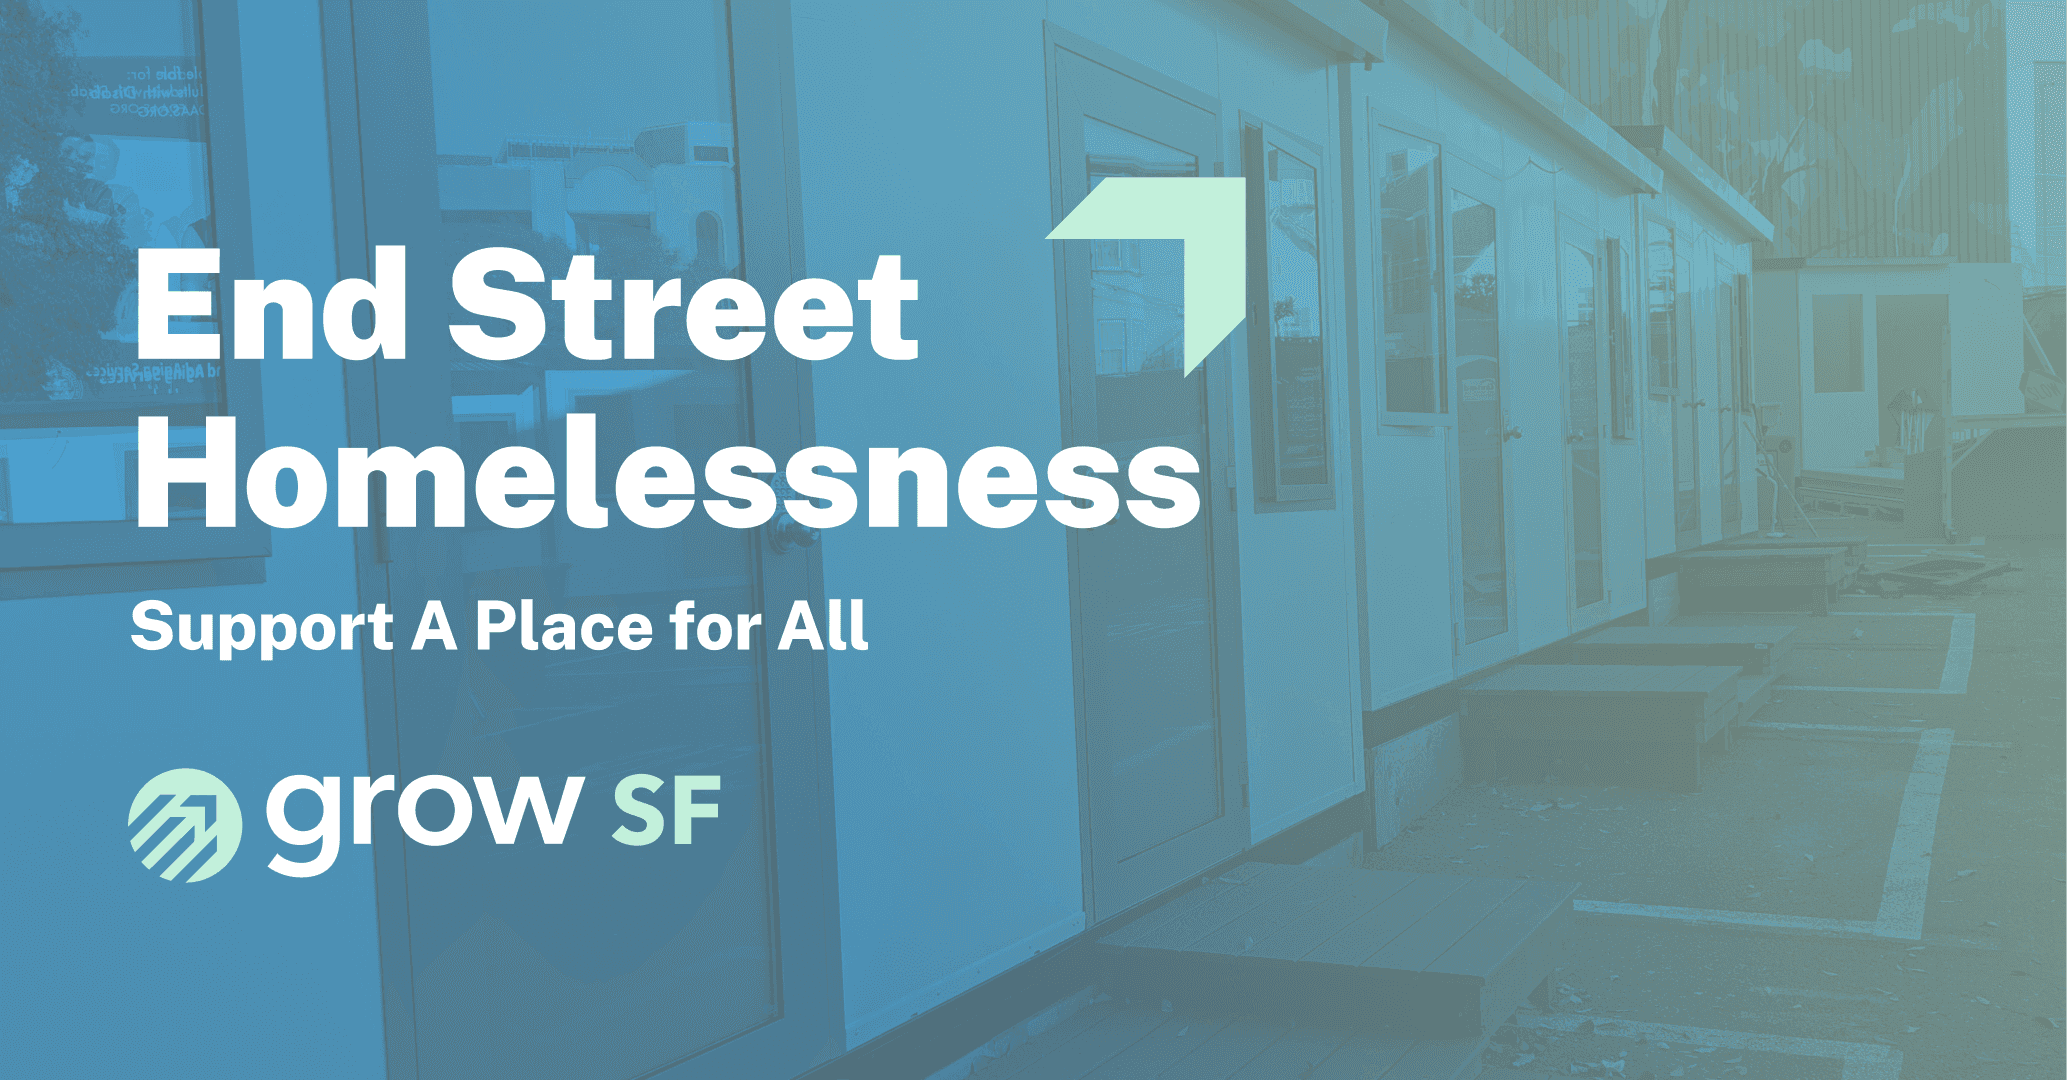 Let's End Street Homelessness